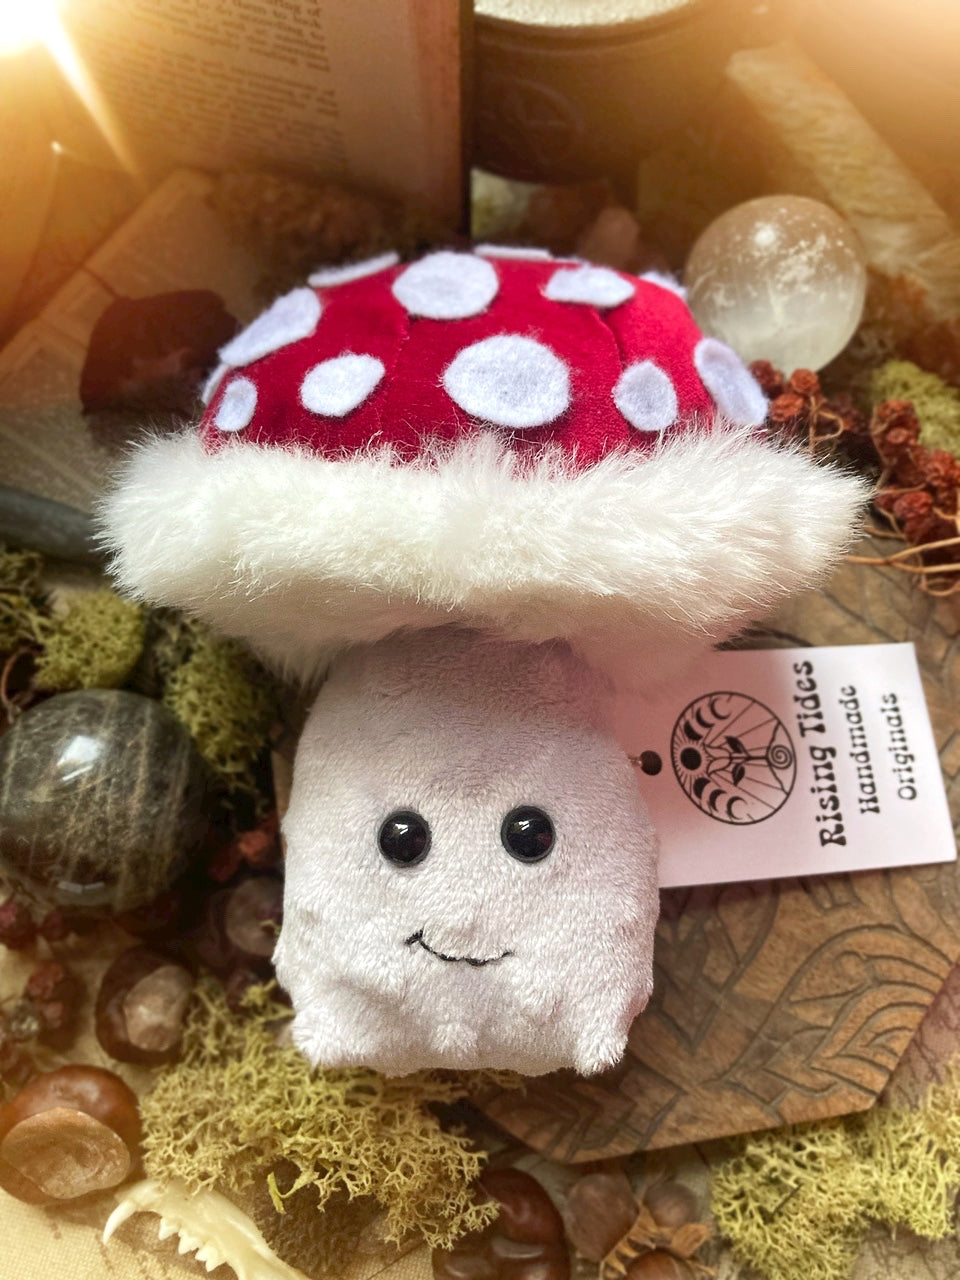 ORIGINAL PLUSHIE MUSHIE Handmade Plush Mushroom Friend